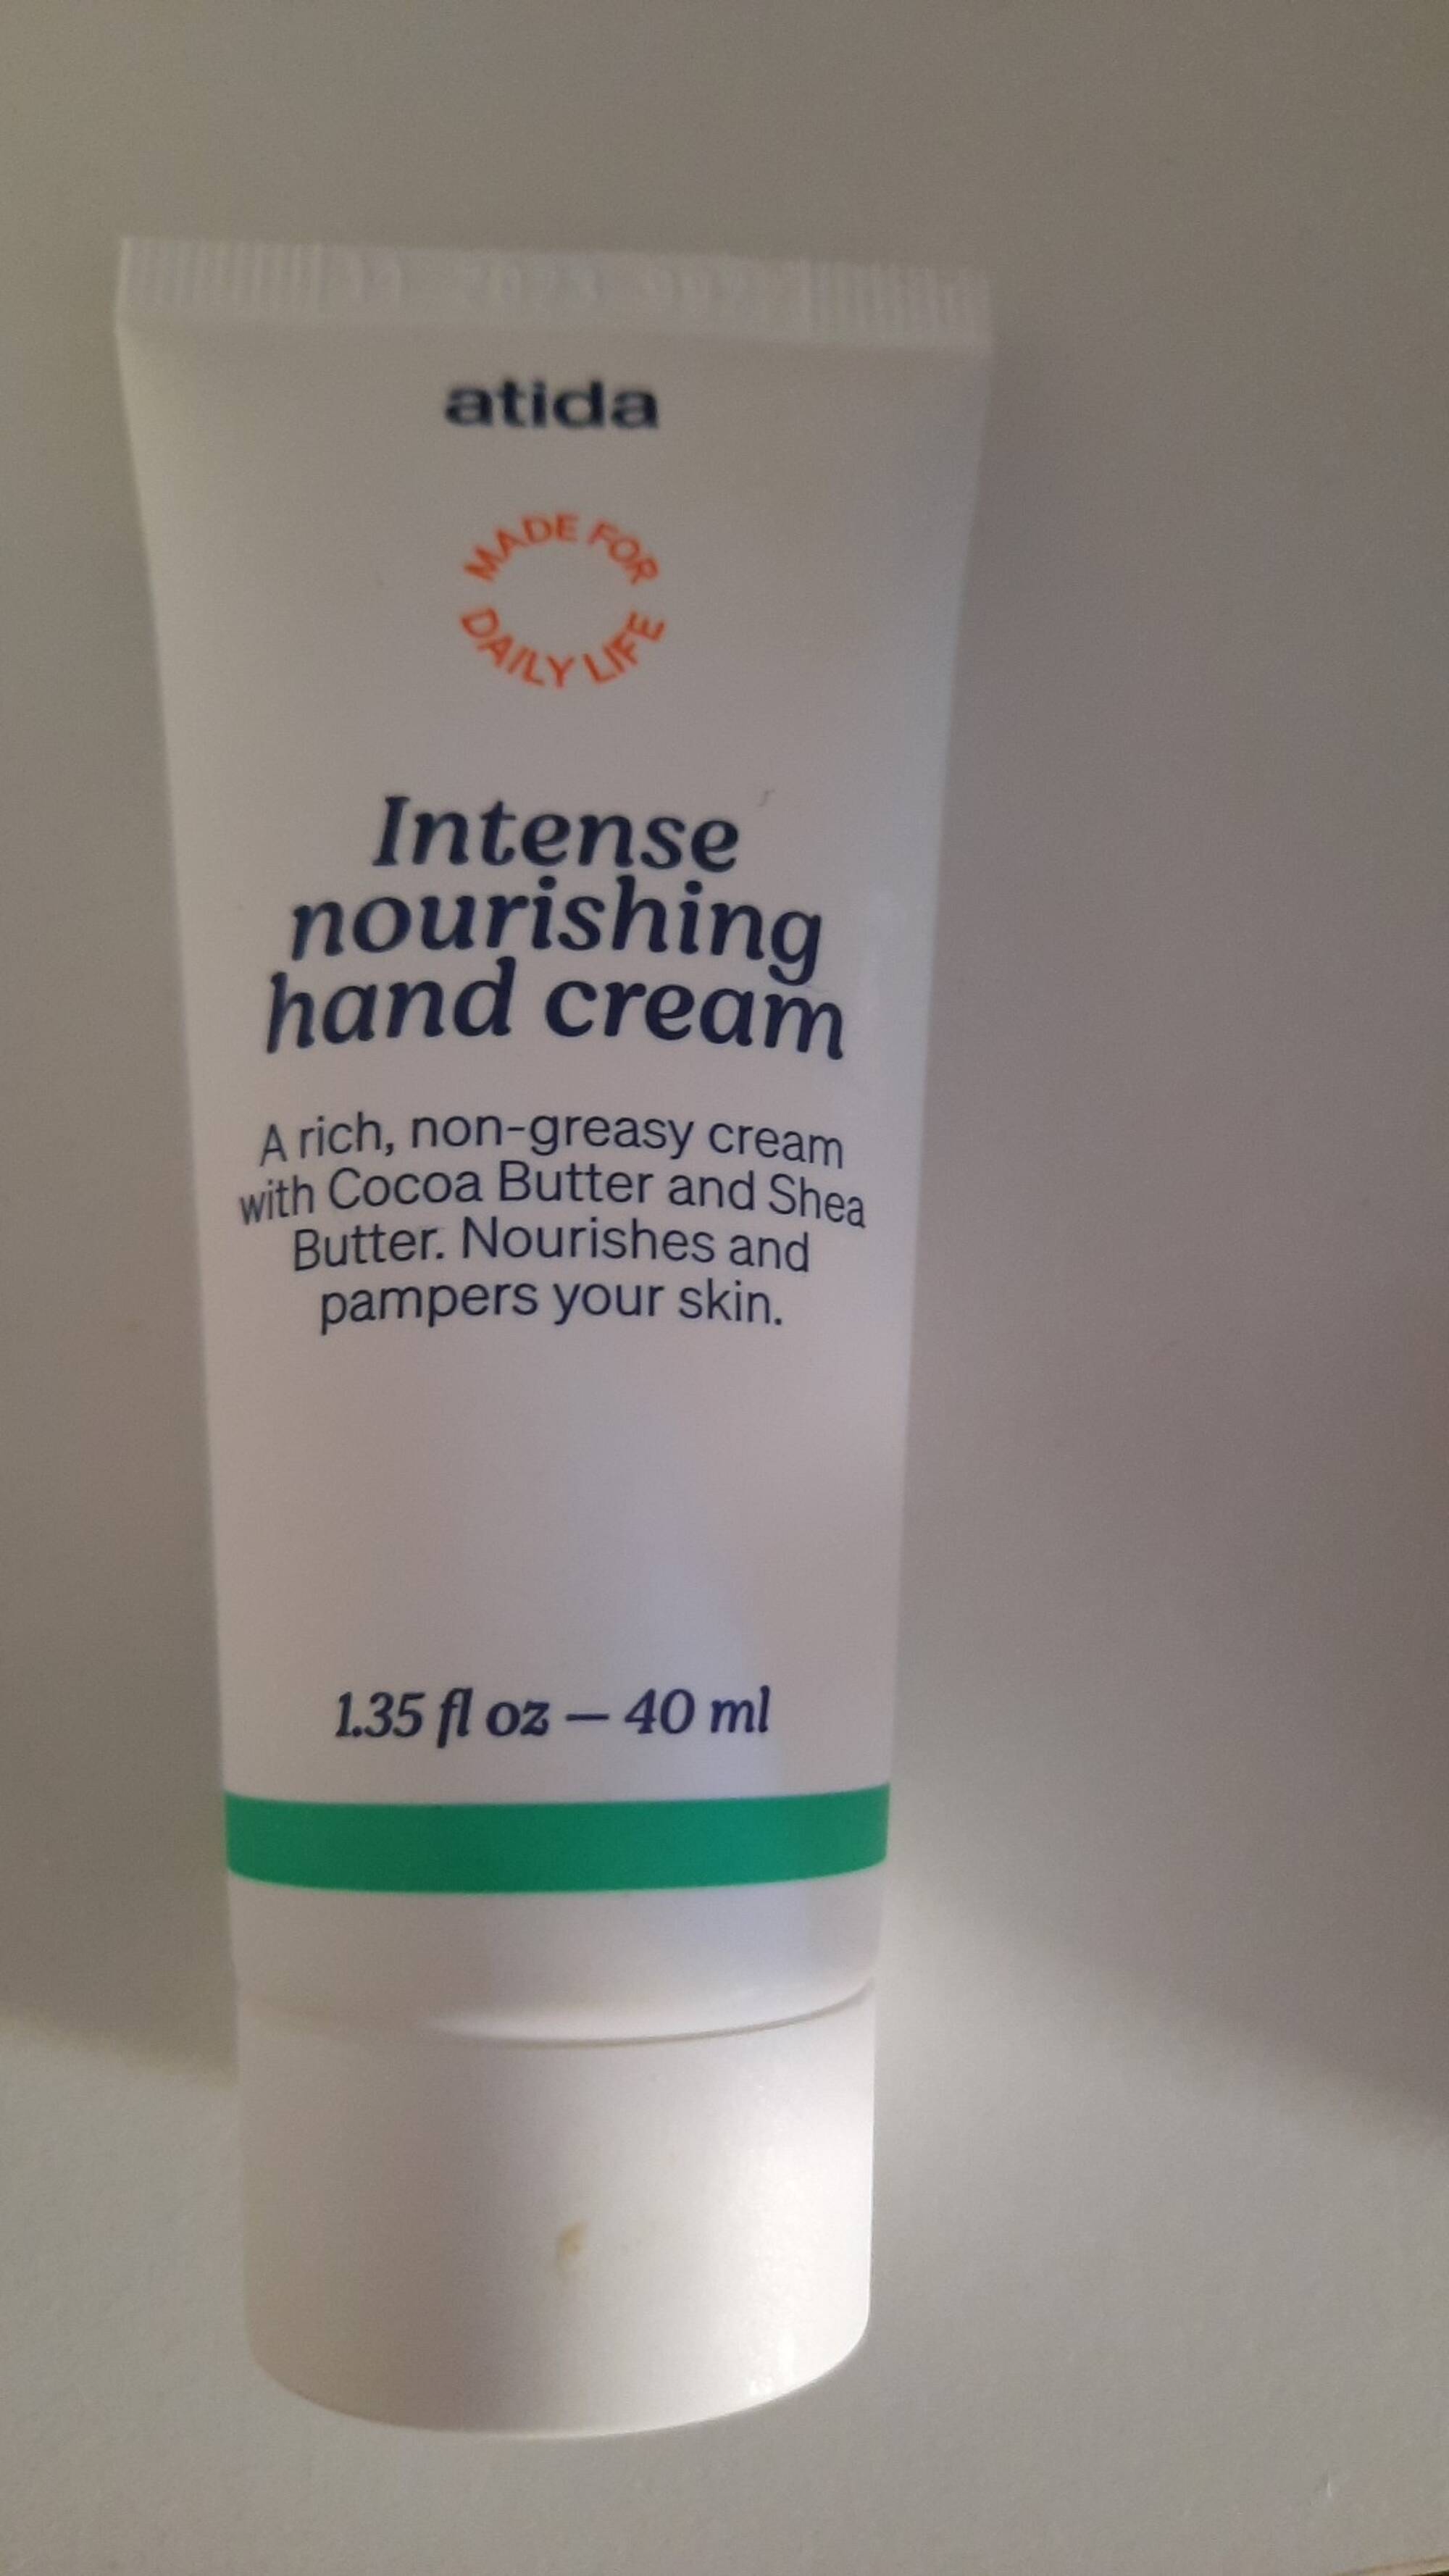 ATIDA - Intense nourishing hand cream